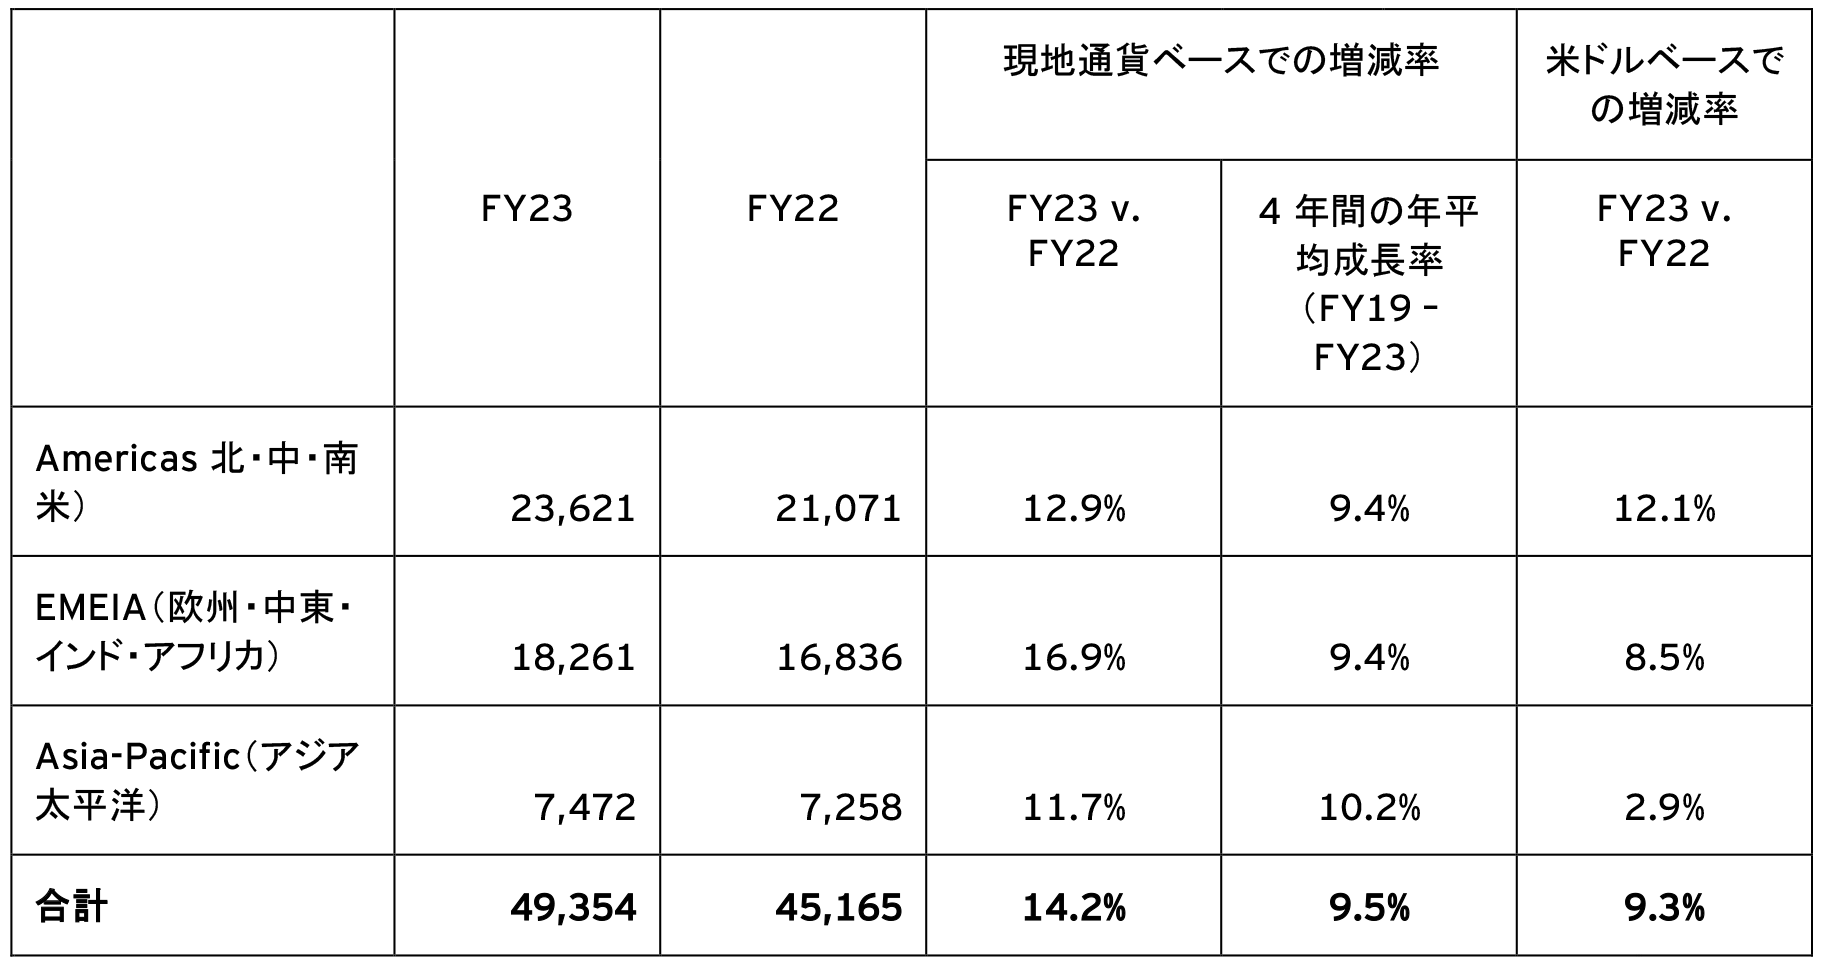 表2：EYのエリア別売上（単位：百万米ドル）